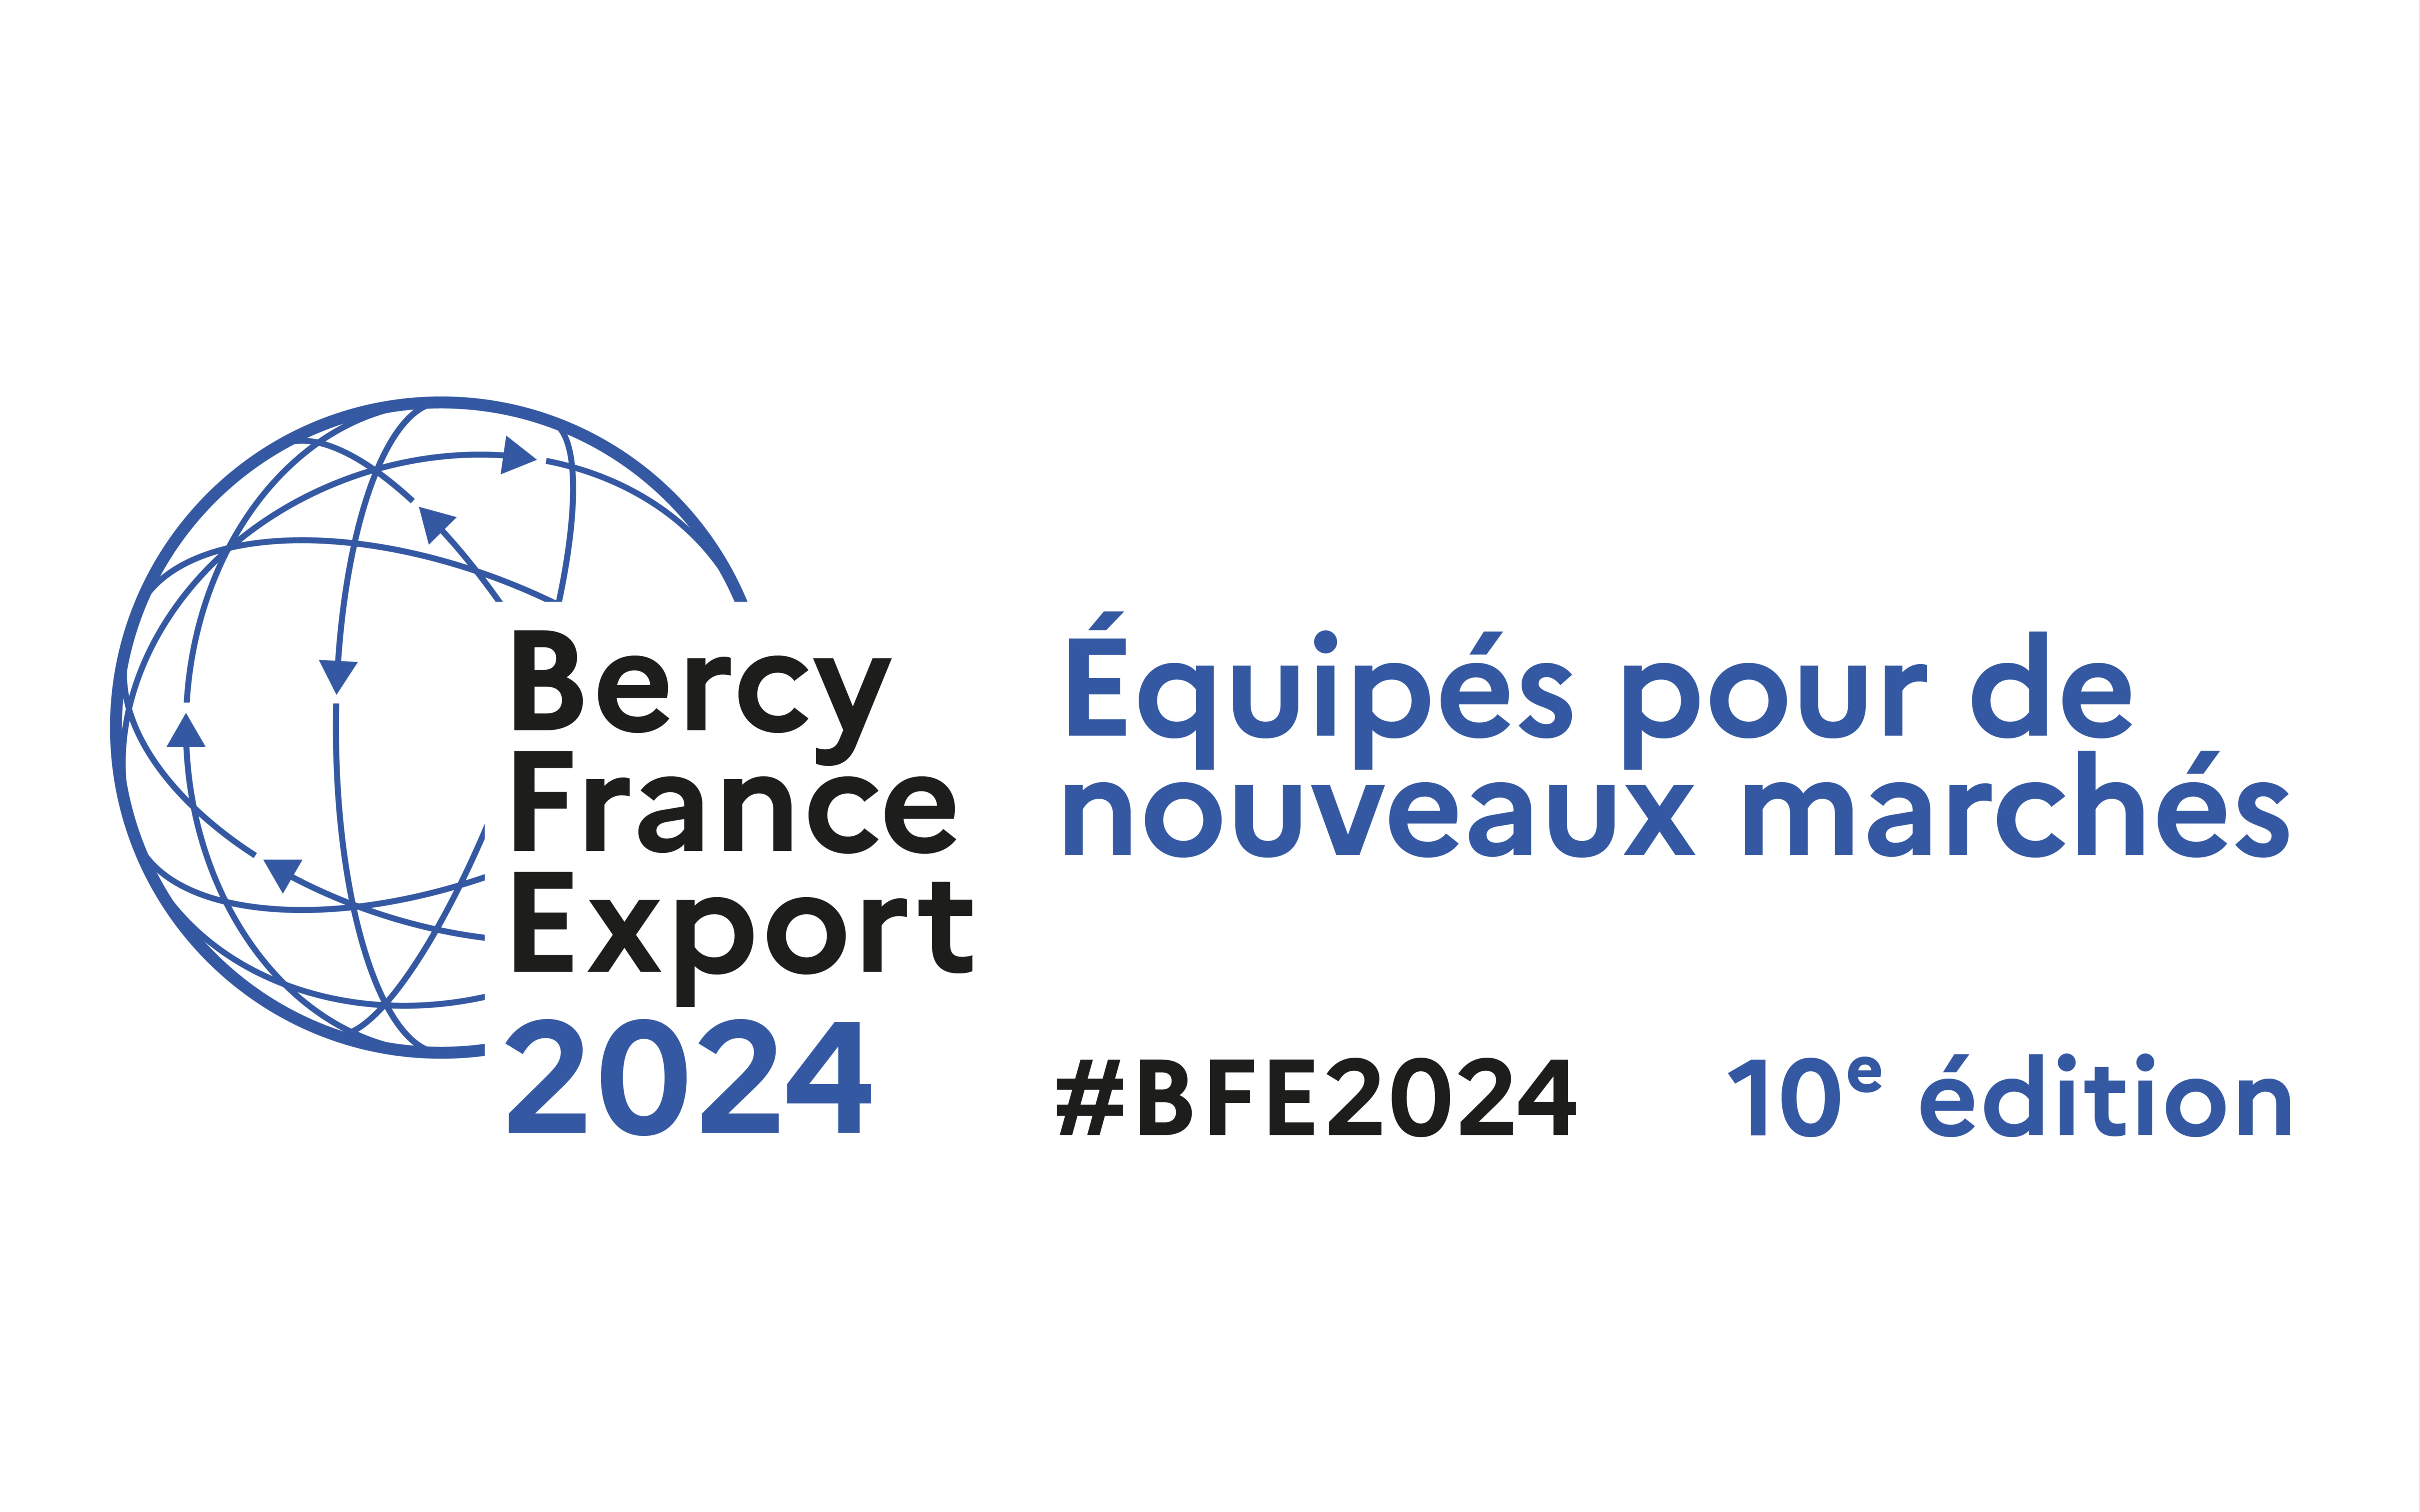 BFE 2024 Equipés pour de nouveaux marchés